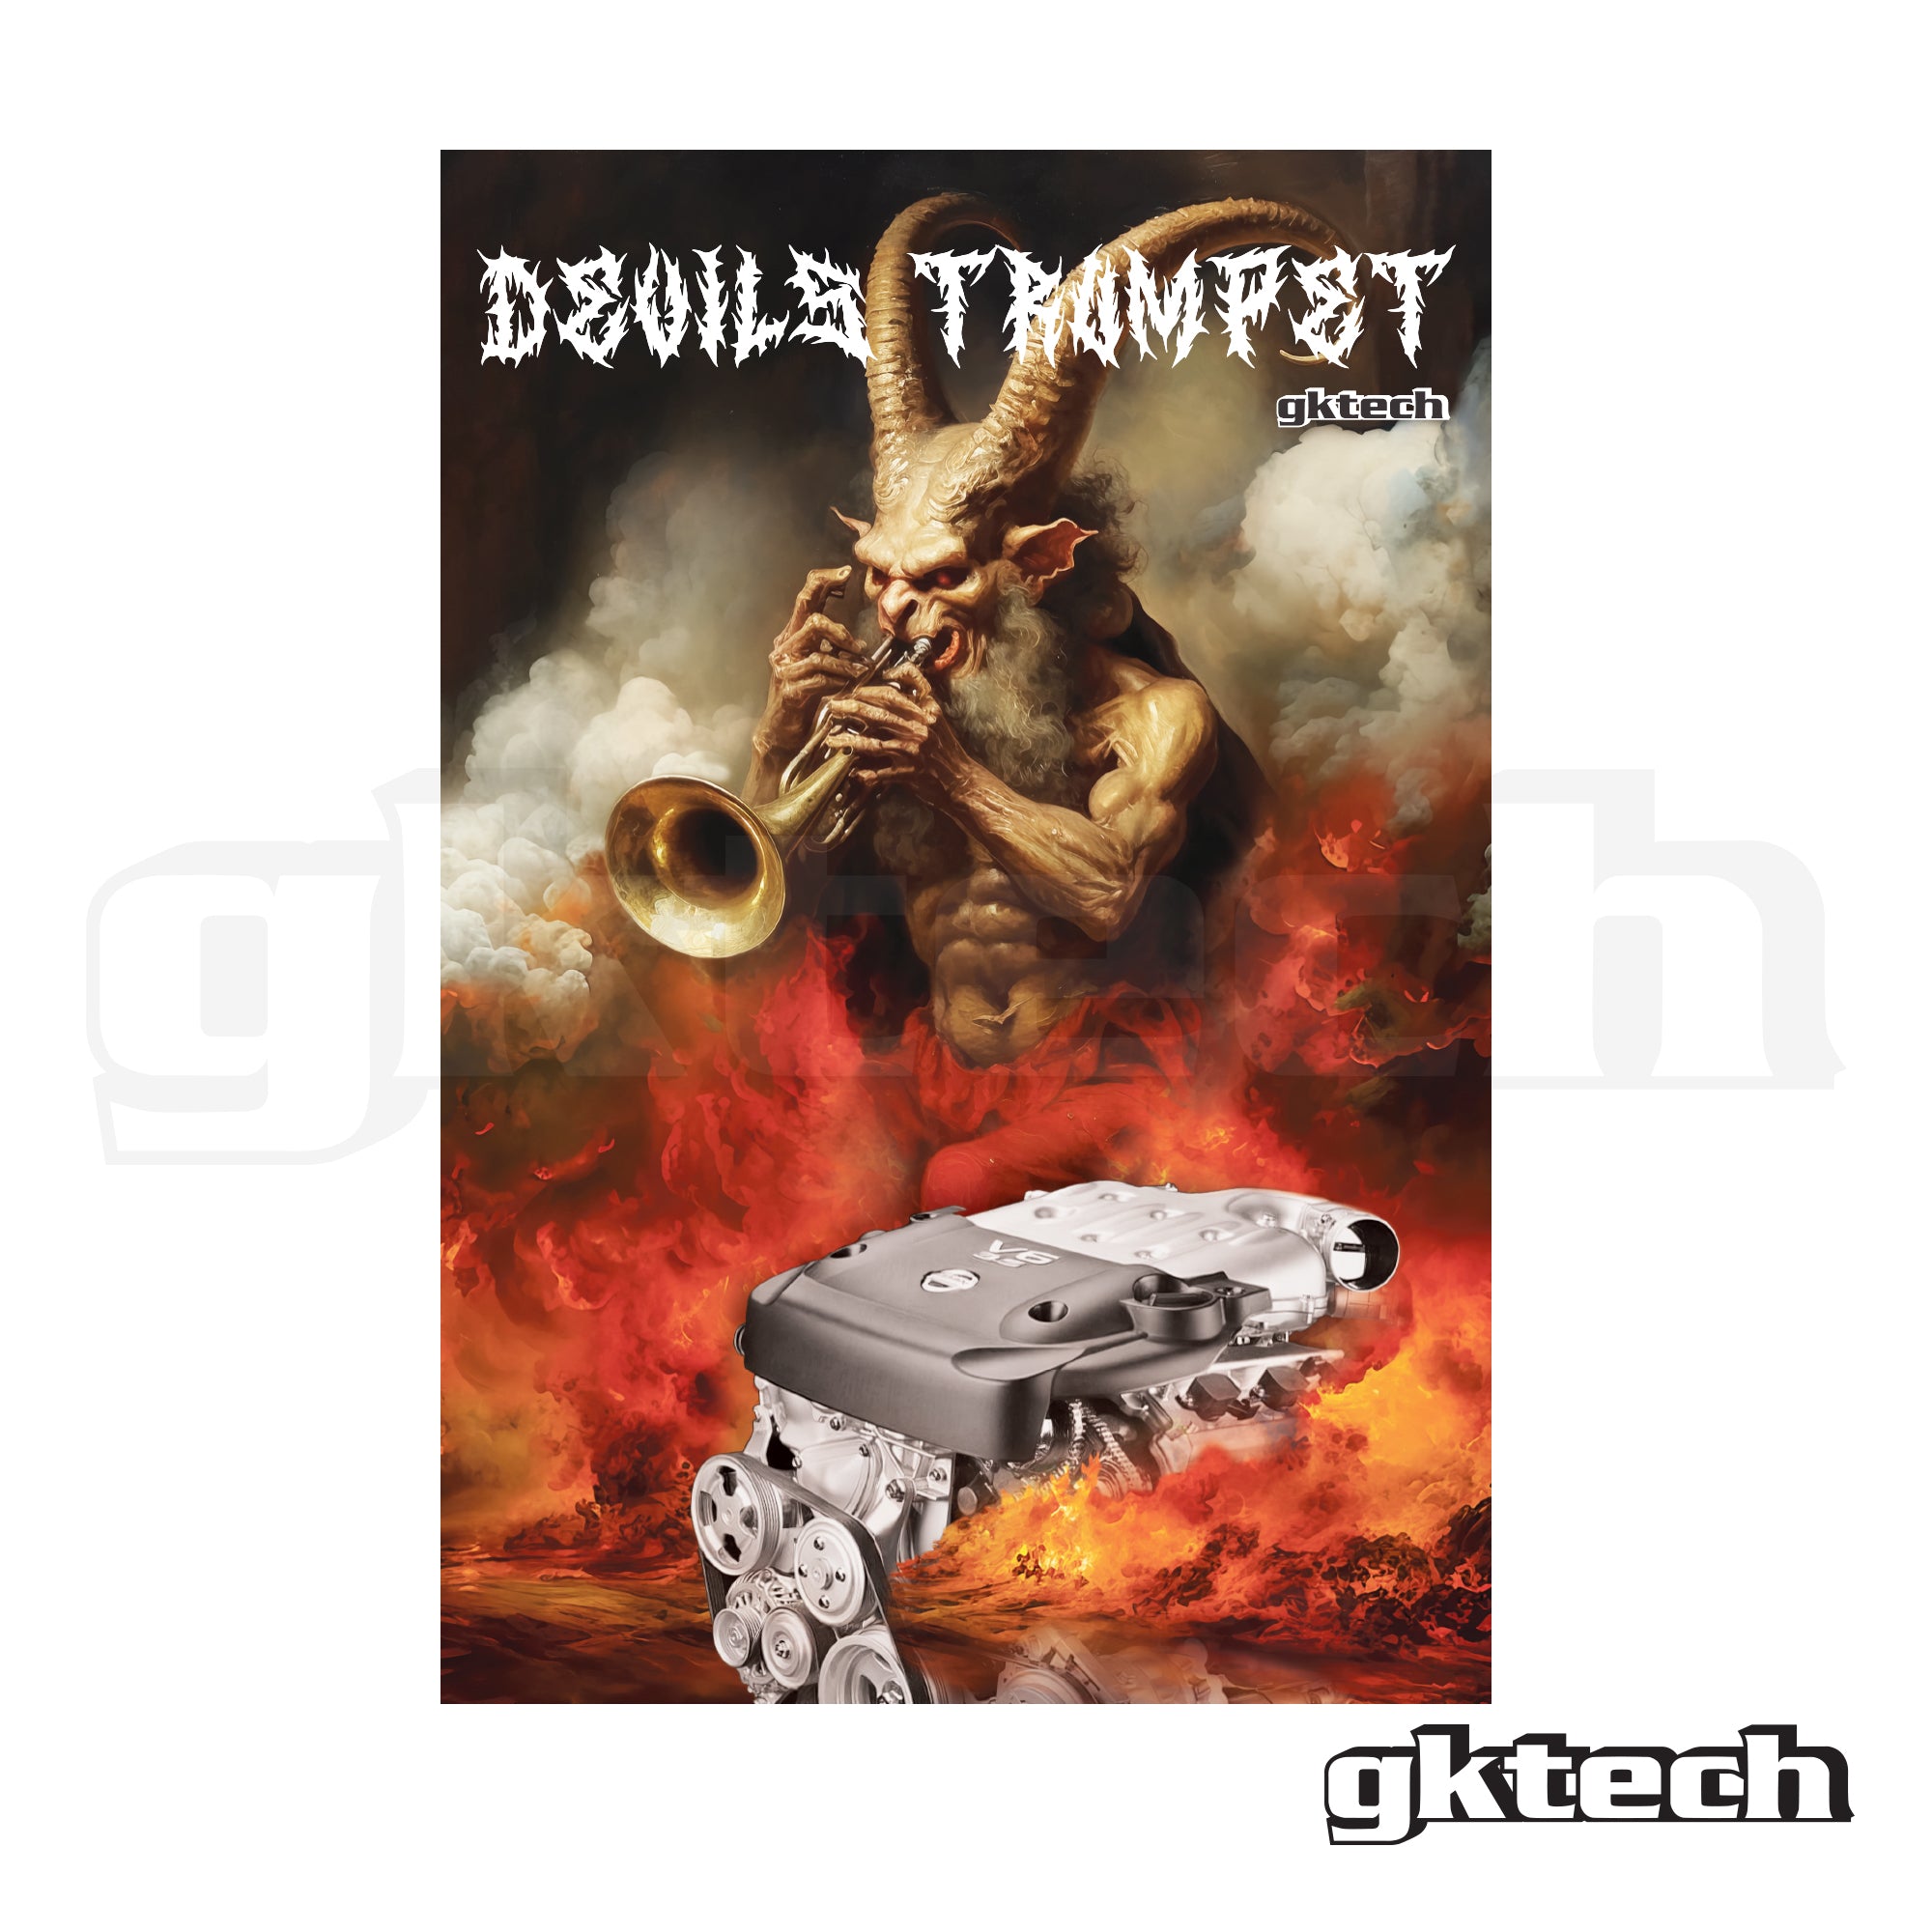 VQ devils trumpet garage banner